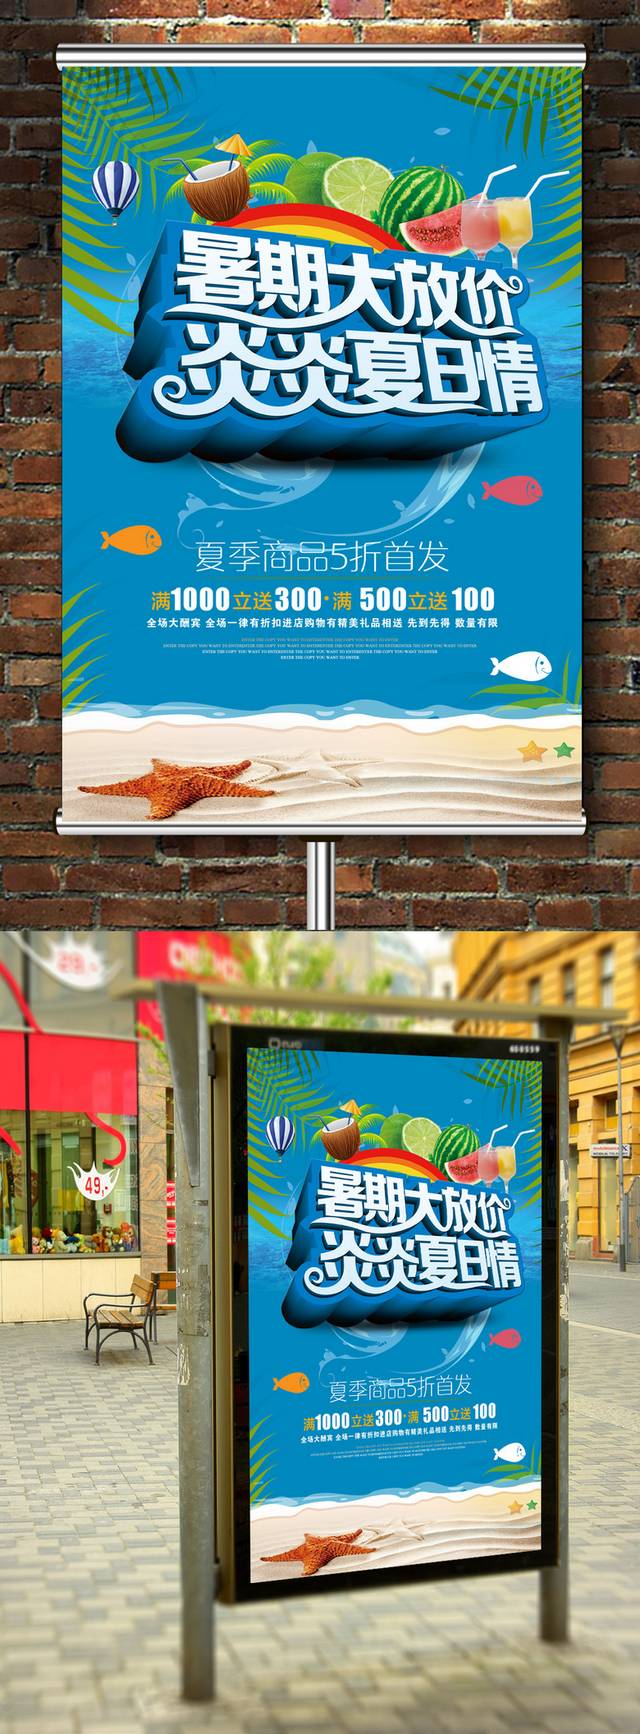 创意暑期促销海报模板设计